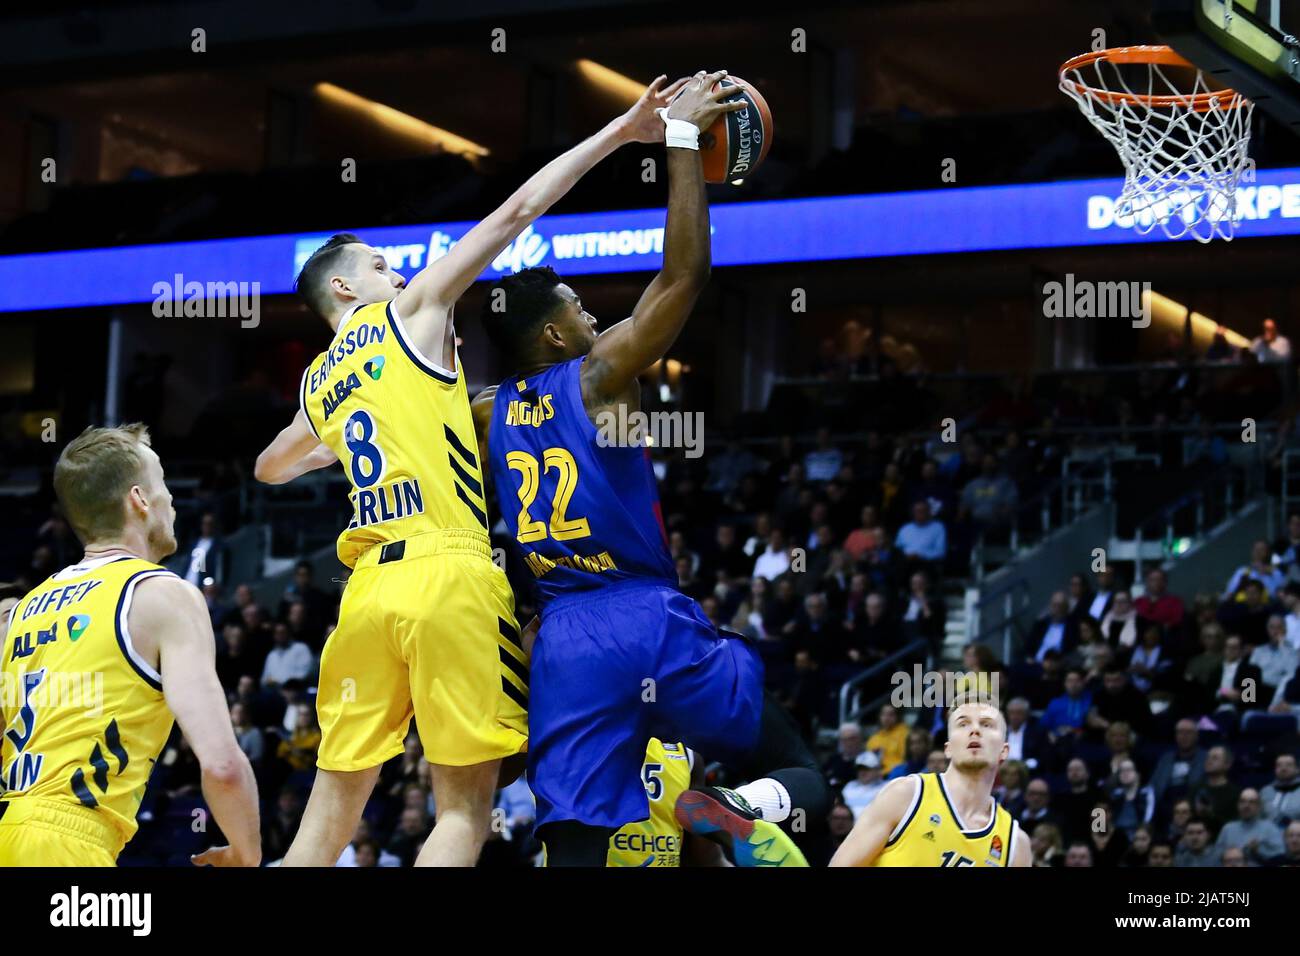 Berlin, Allemagne, le joueur de 04 mars 2020:Basketball Cory Higgins du FC Barcelone a obtenu un point lors du match de basket-ball de l'Euroligue Banque D'Images